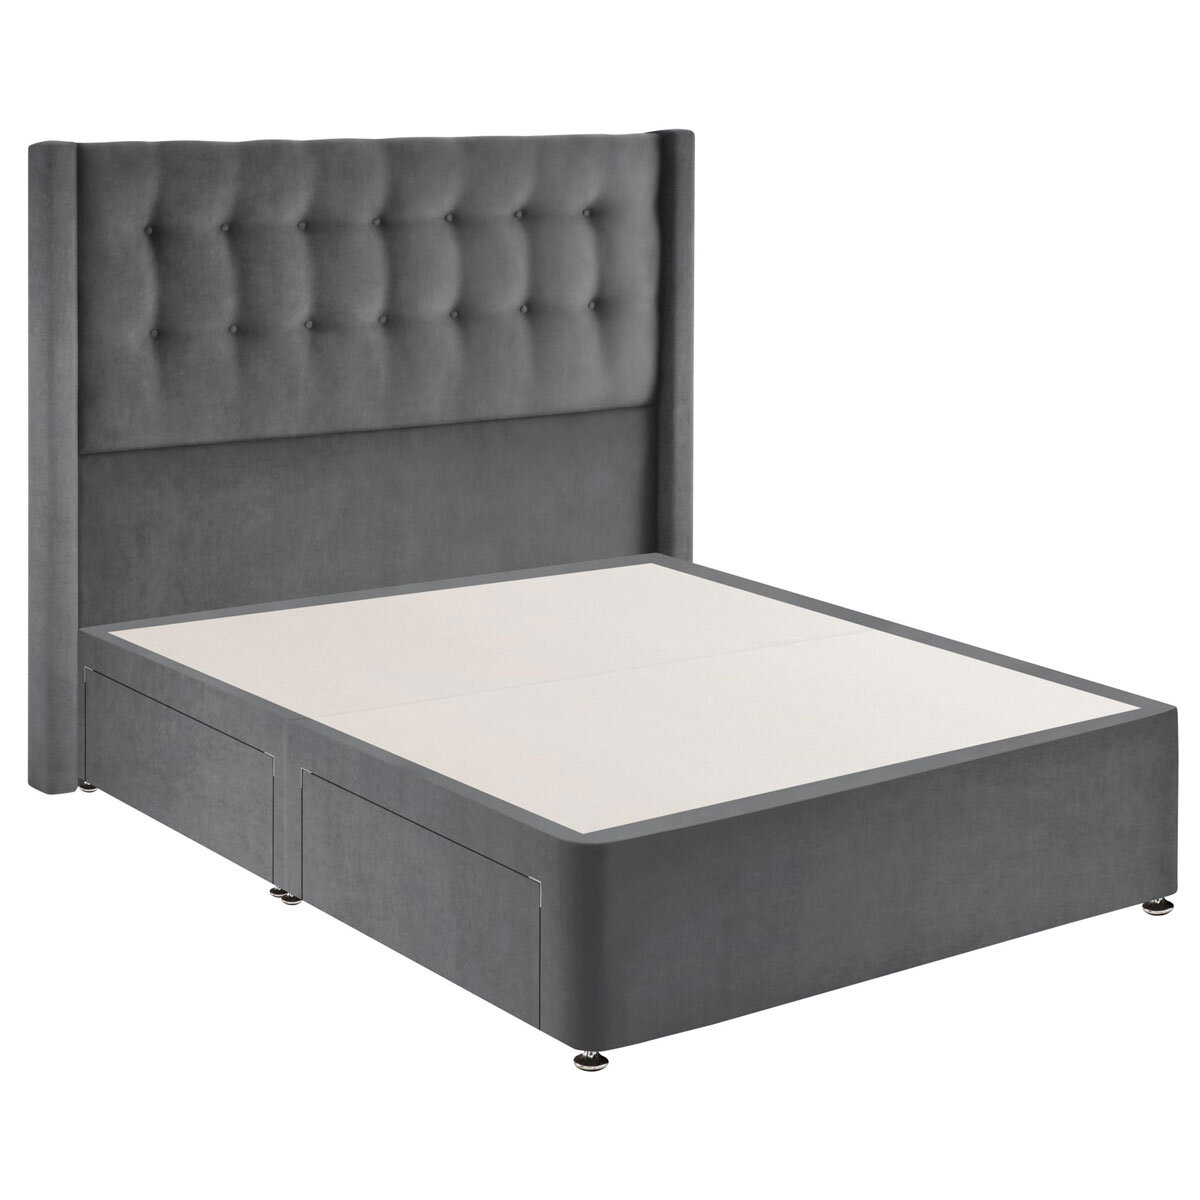 Silentnight 4 drawer velvet divan in charoal grey